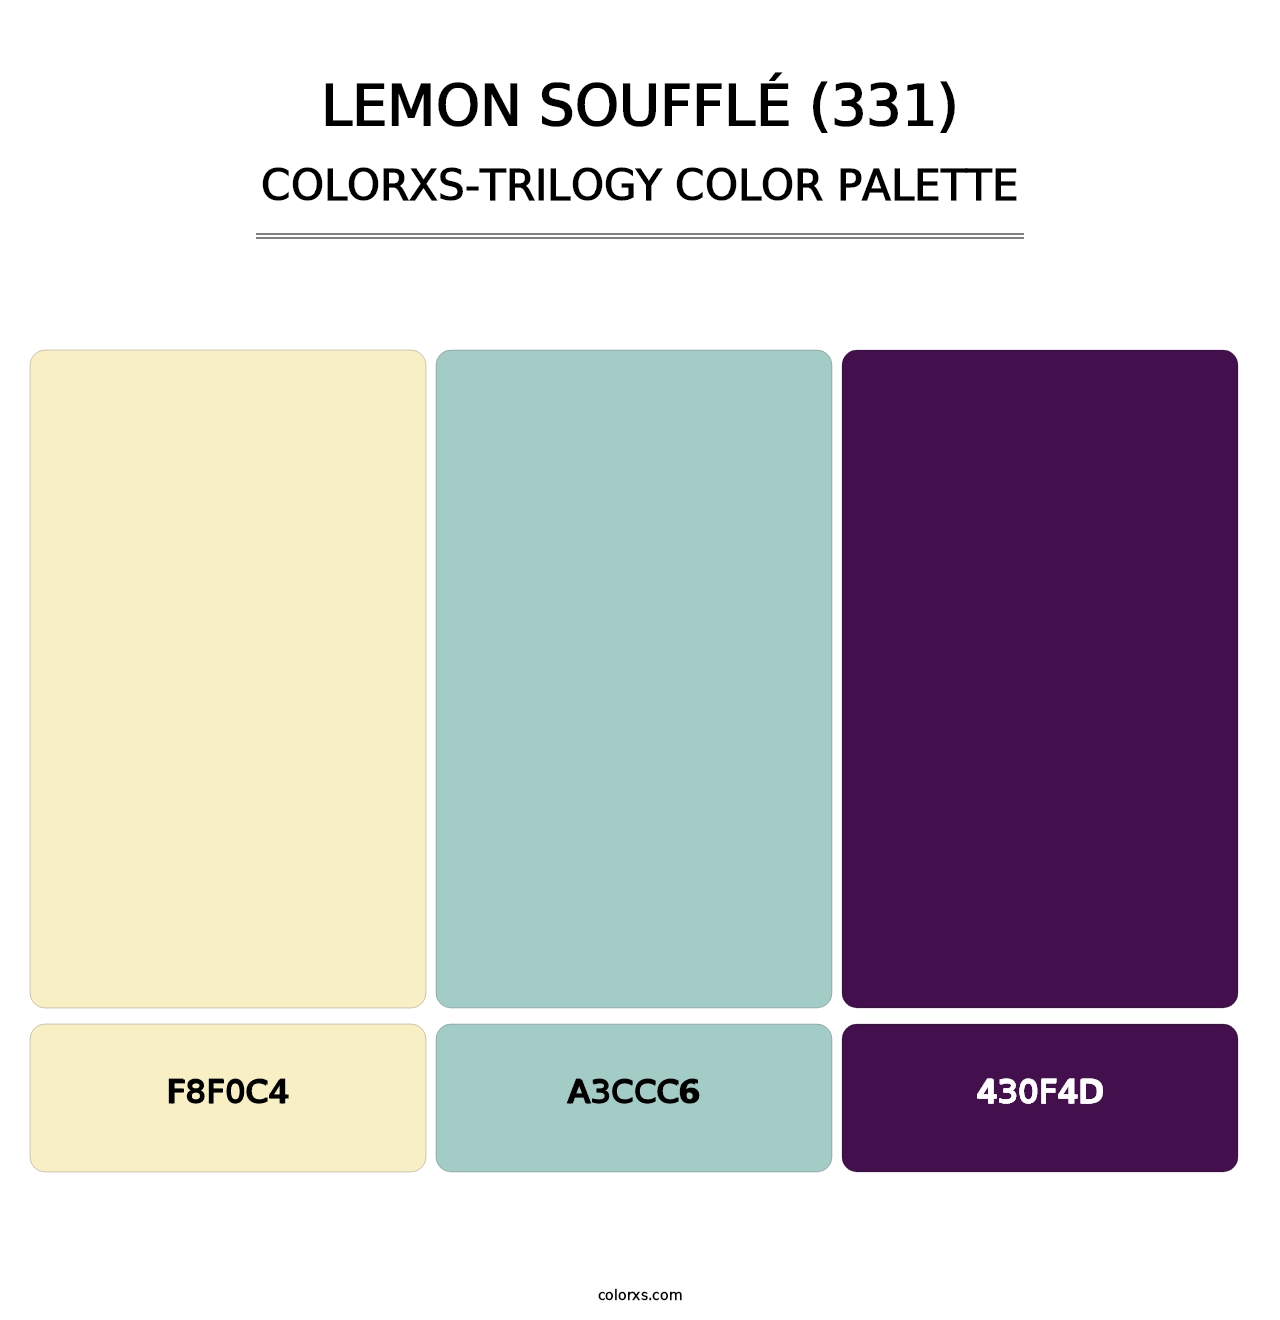 Lemon Soufflé (331) - Colorxs Trilogy Palette